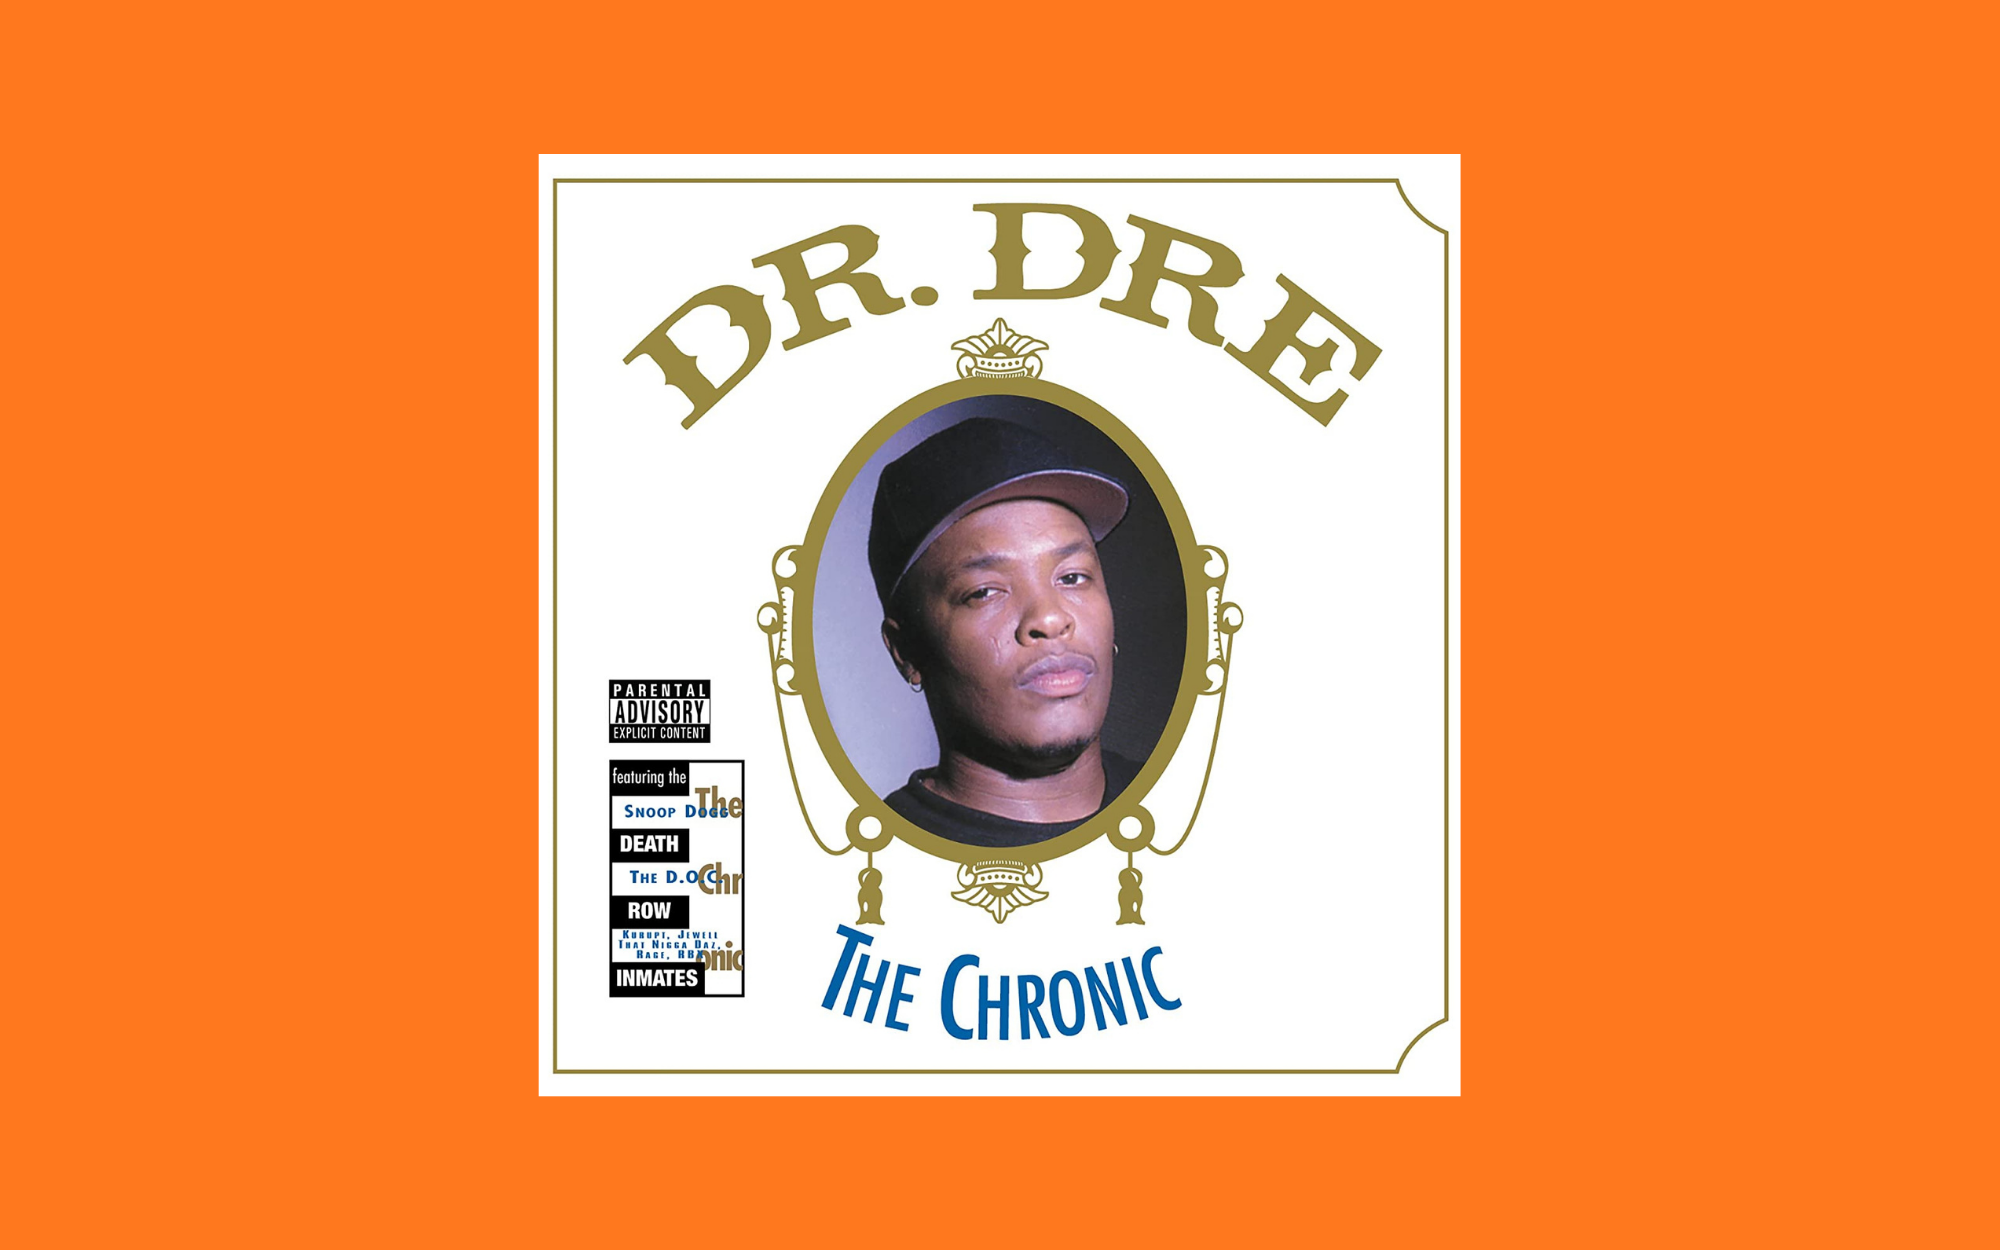 Capa do disco The Chronic, do Dr. Dree